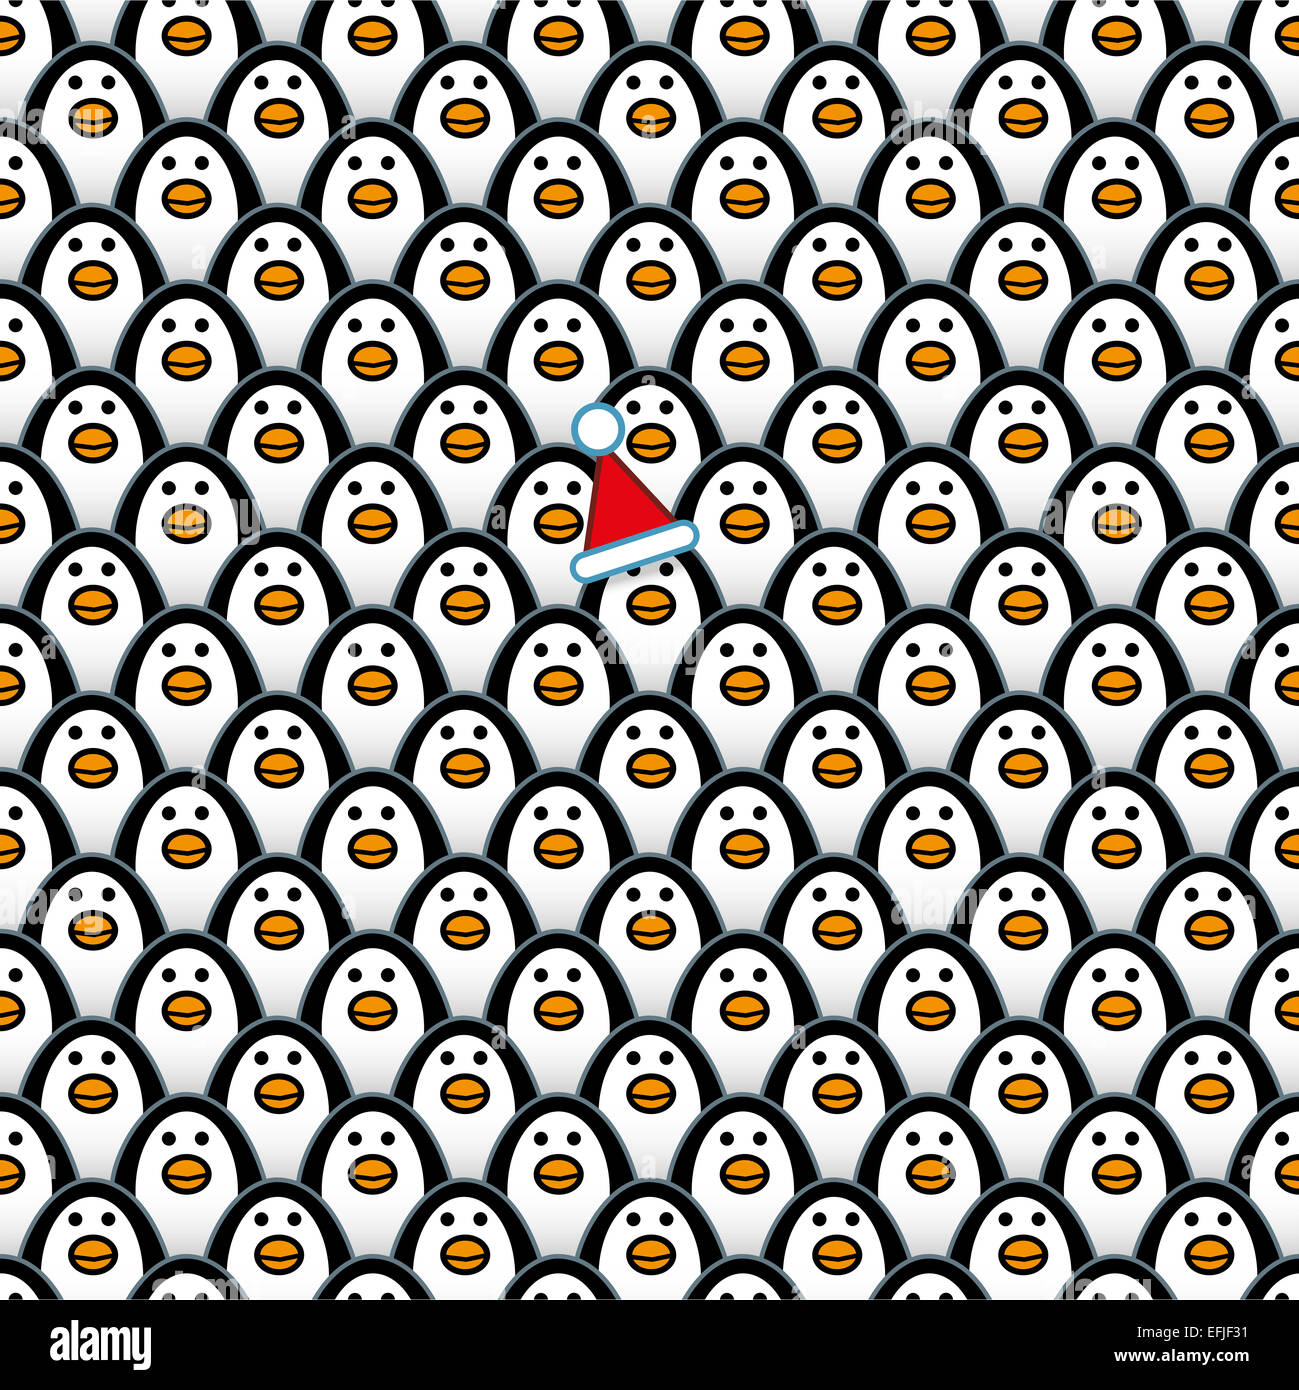 Un seul Penguin portant un chapeau de Père Noël dans les rangées de l'avant et répéter à l'identique fixant les Pingouins Banque D'Images